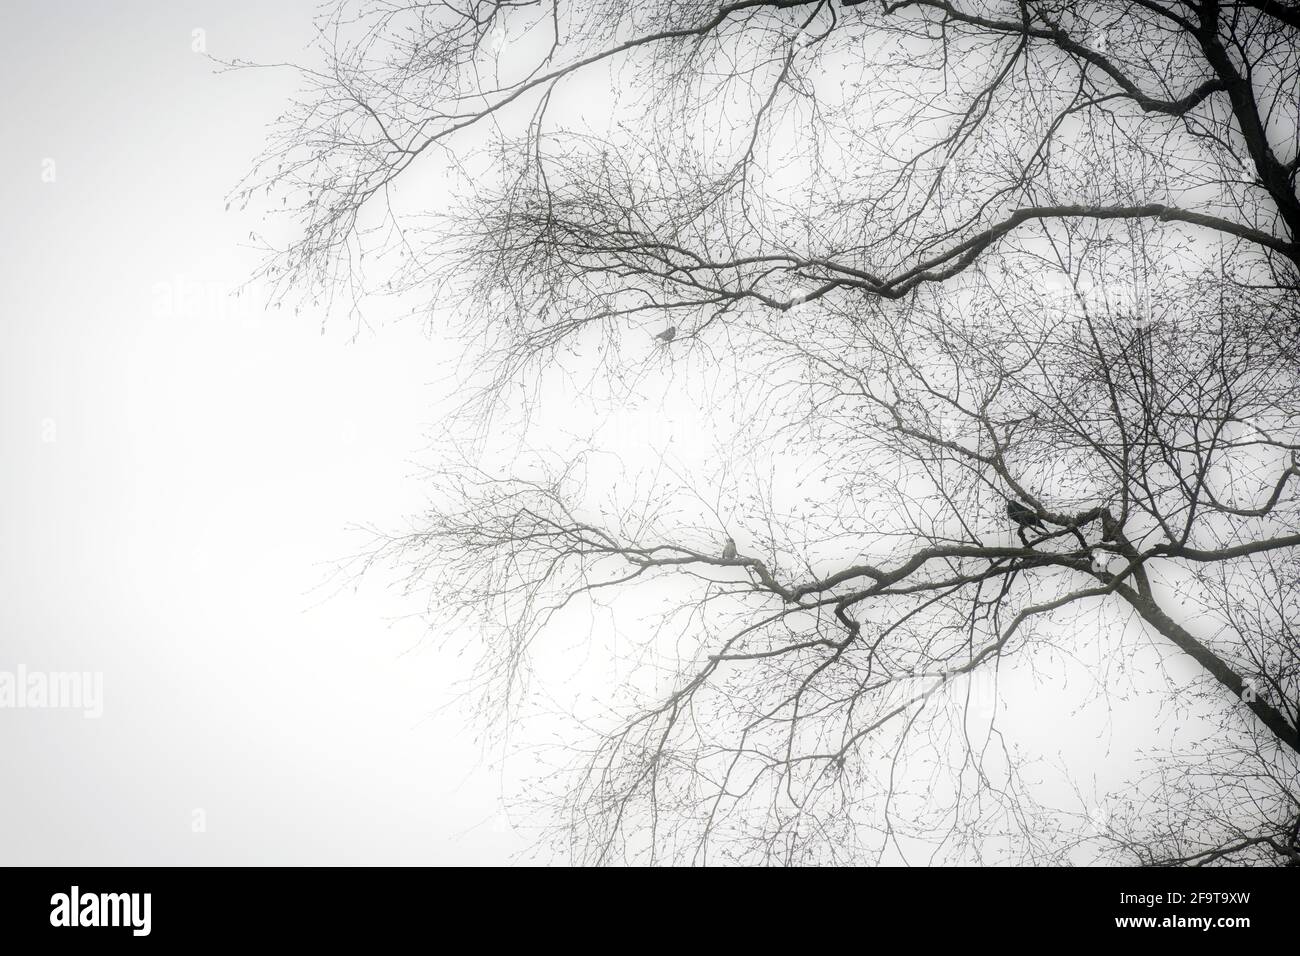 Eine Silhouette eines schwarzen Baumes ohne Blätter mit Vögeln Sitzen auf einem Zweig mit Geheimnis launischen Nebel schönen Hintergrund Stockfoto